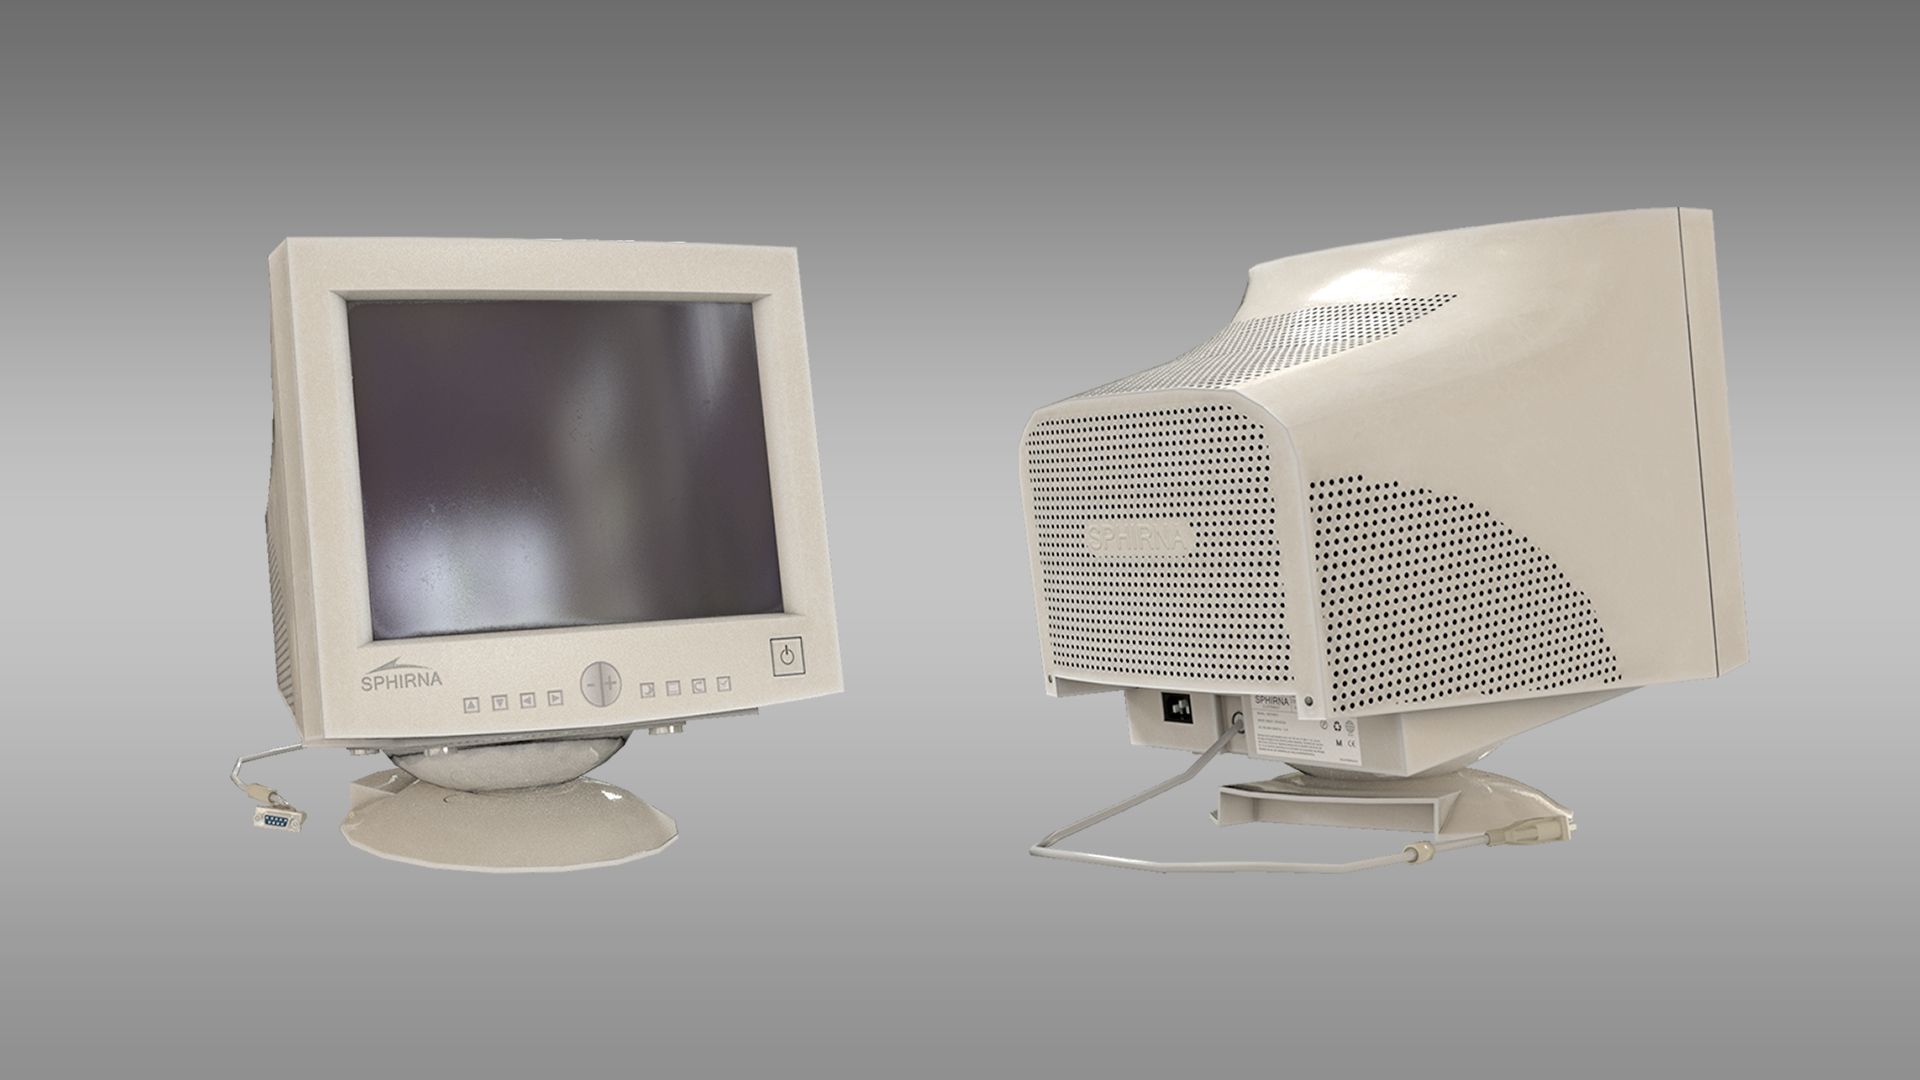 CRT vs LCD: Te enseñamos las principales diferencias entre ambos tipos de monitor